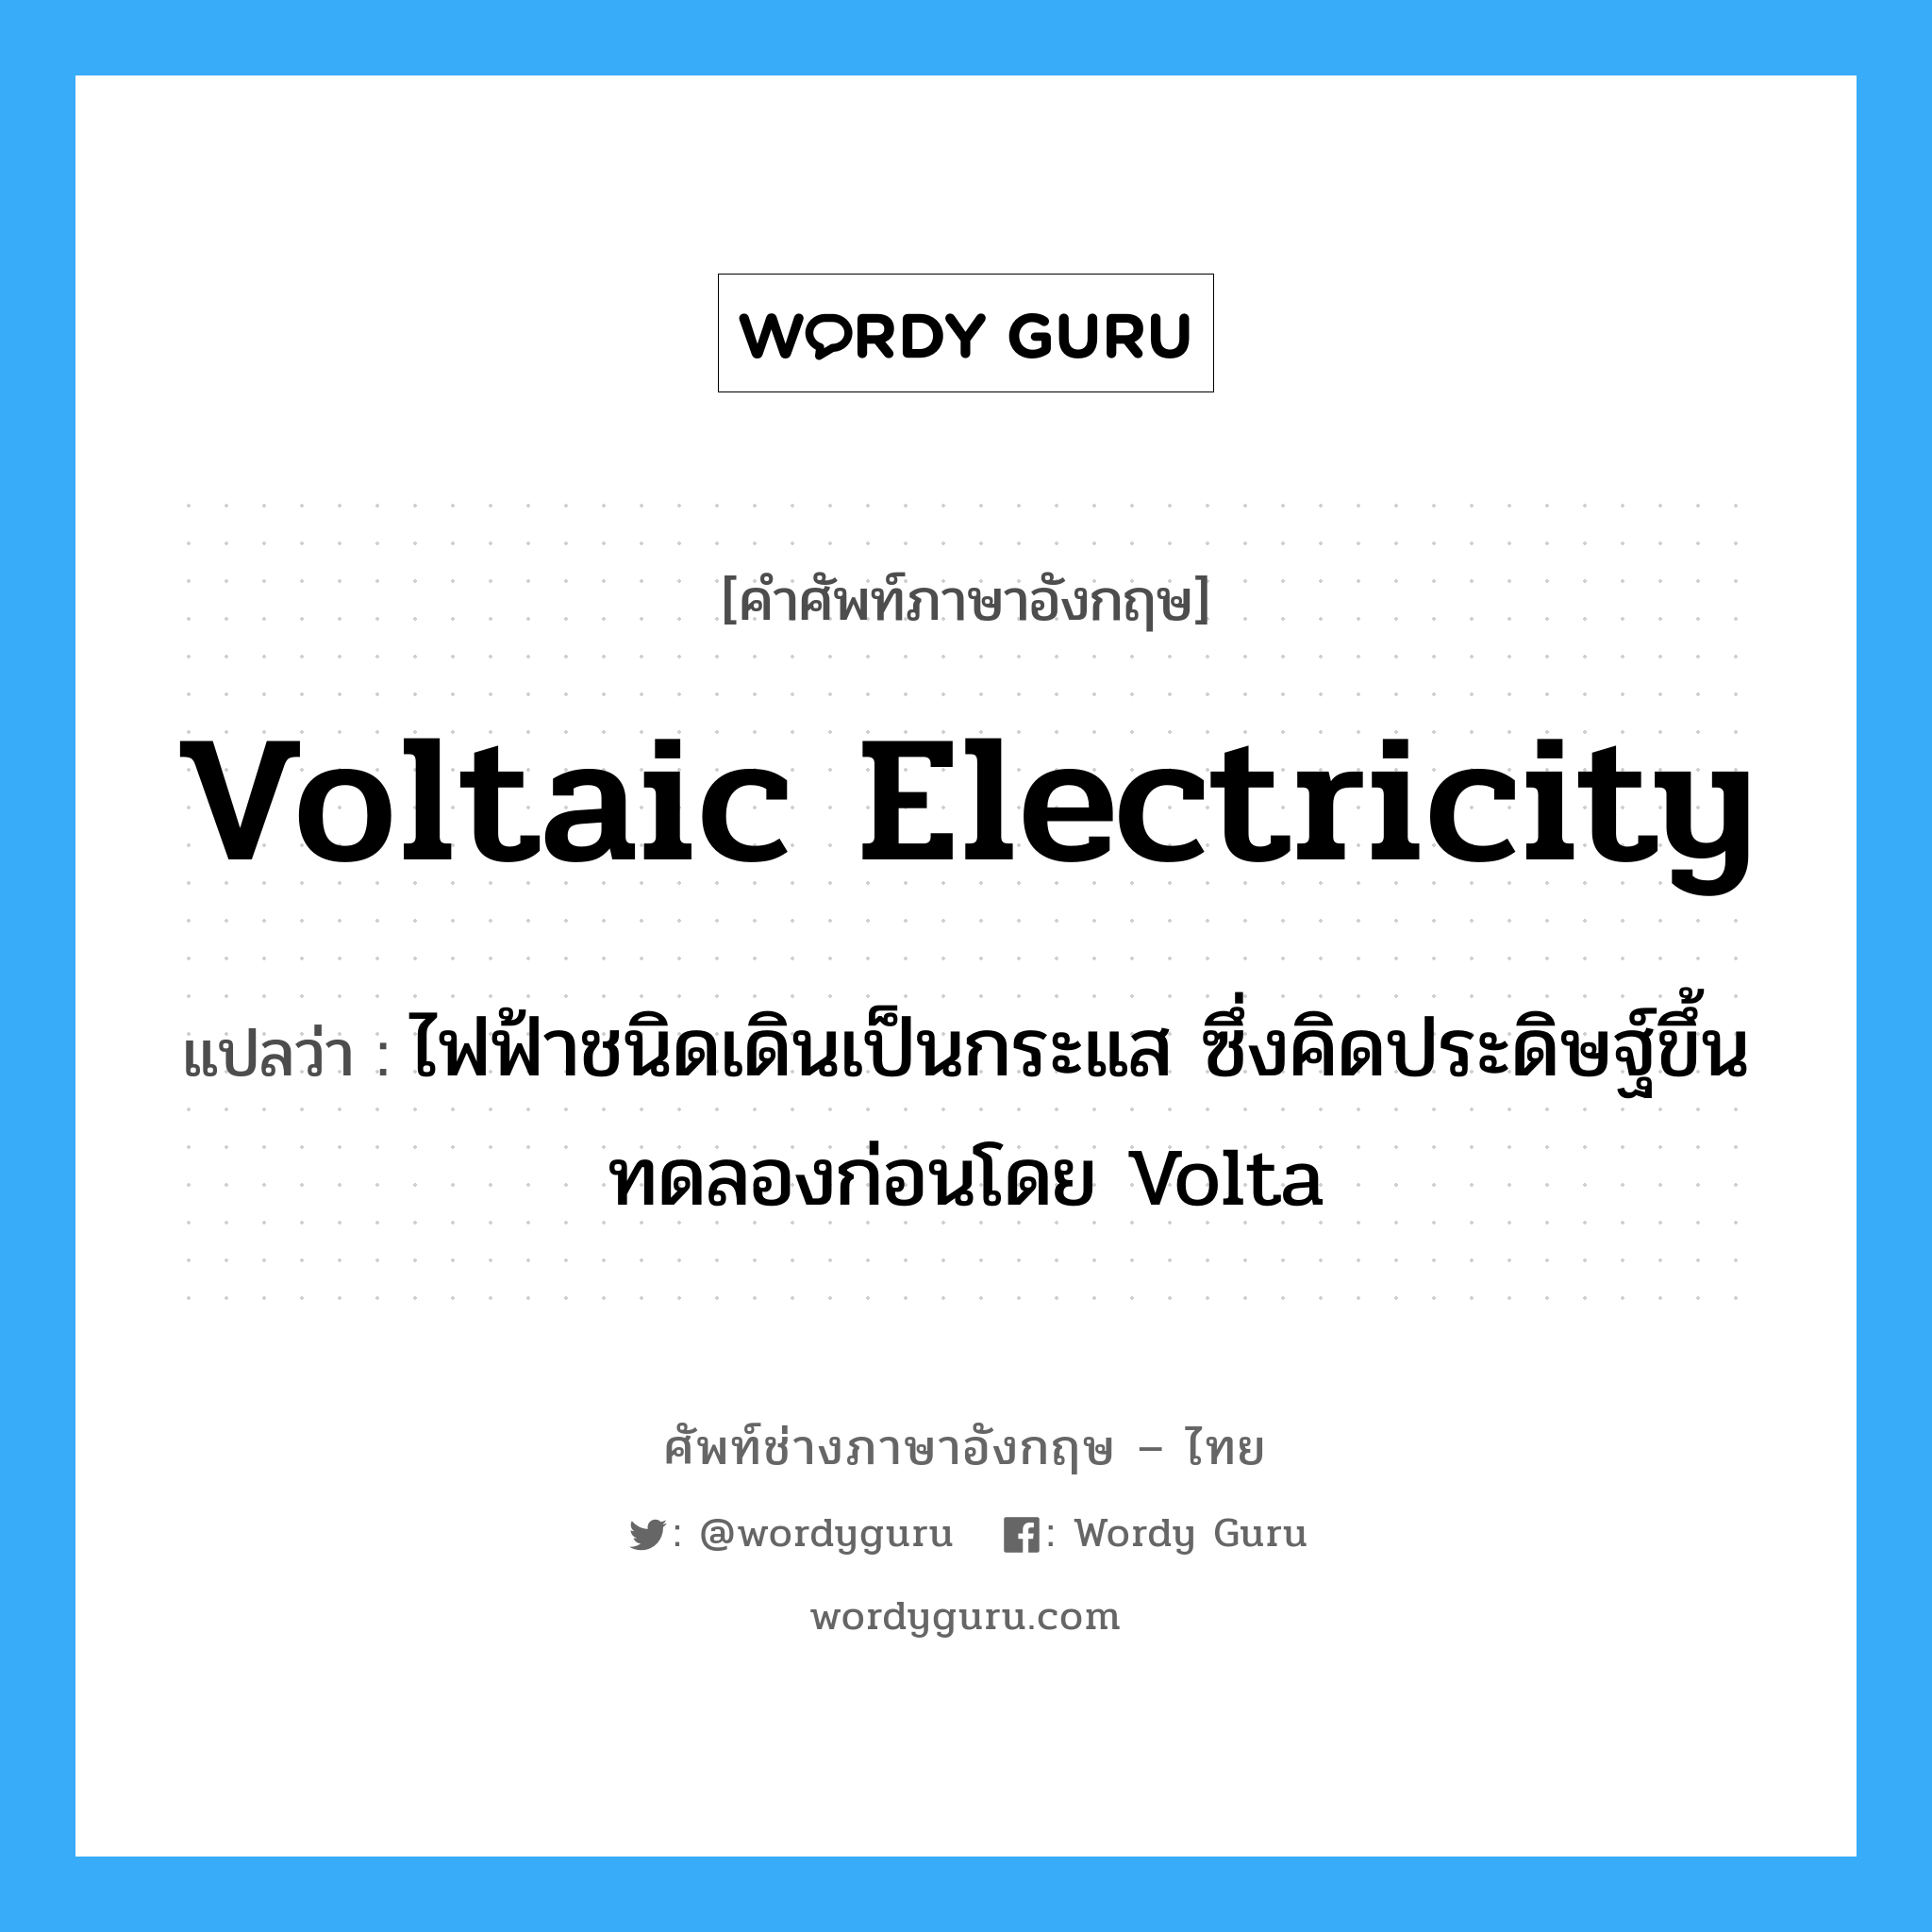 ไฟฟ้าชนิดเดินเป็นกระแส ซึ่งคิดประดิษฐ์ขึ้นทดลองก่อนโดย Volta ภาษาอังกฤษ?, คำศัพท์ช่างภาษาอังกฤษ - ไทย ไฟฟ้าชนิดเดินเป็นกระแส ซึ่งคิดประดิษฐ์ขึ้นทดลองก่อนโดย Volta คำศัพท์ภาษาอังกฤษ ไฟฟ้าชนิดเดินเป็นกระแส ซึ่งคิดประดิษฐ์ขึ้นทดลองก่อนโดย Volta แปลว่า voltaic electricity